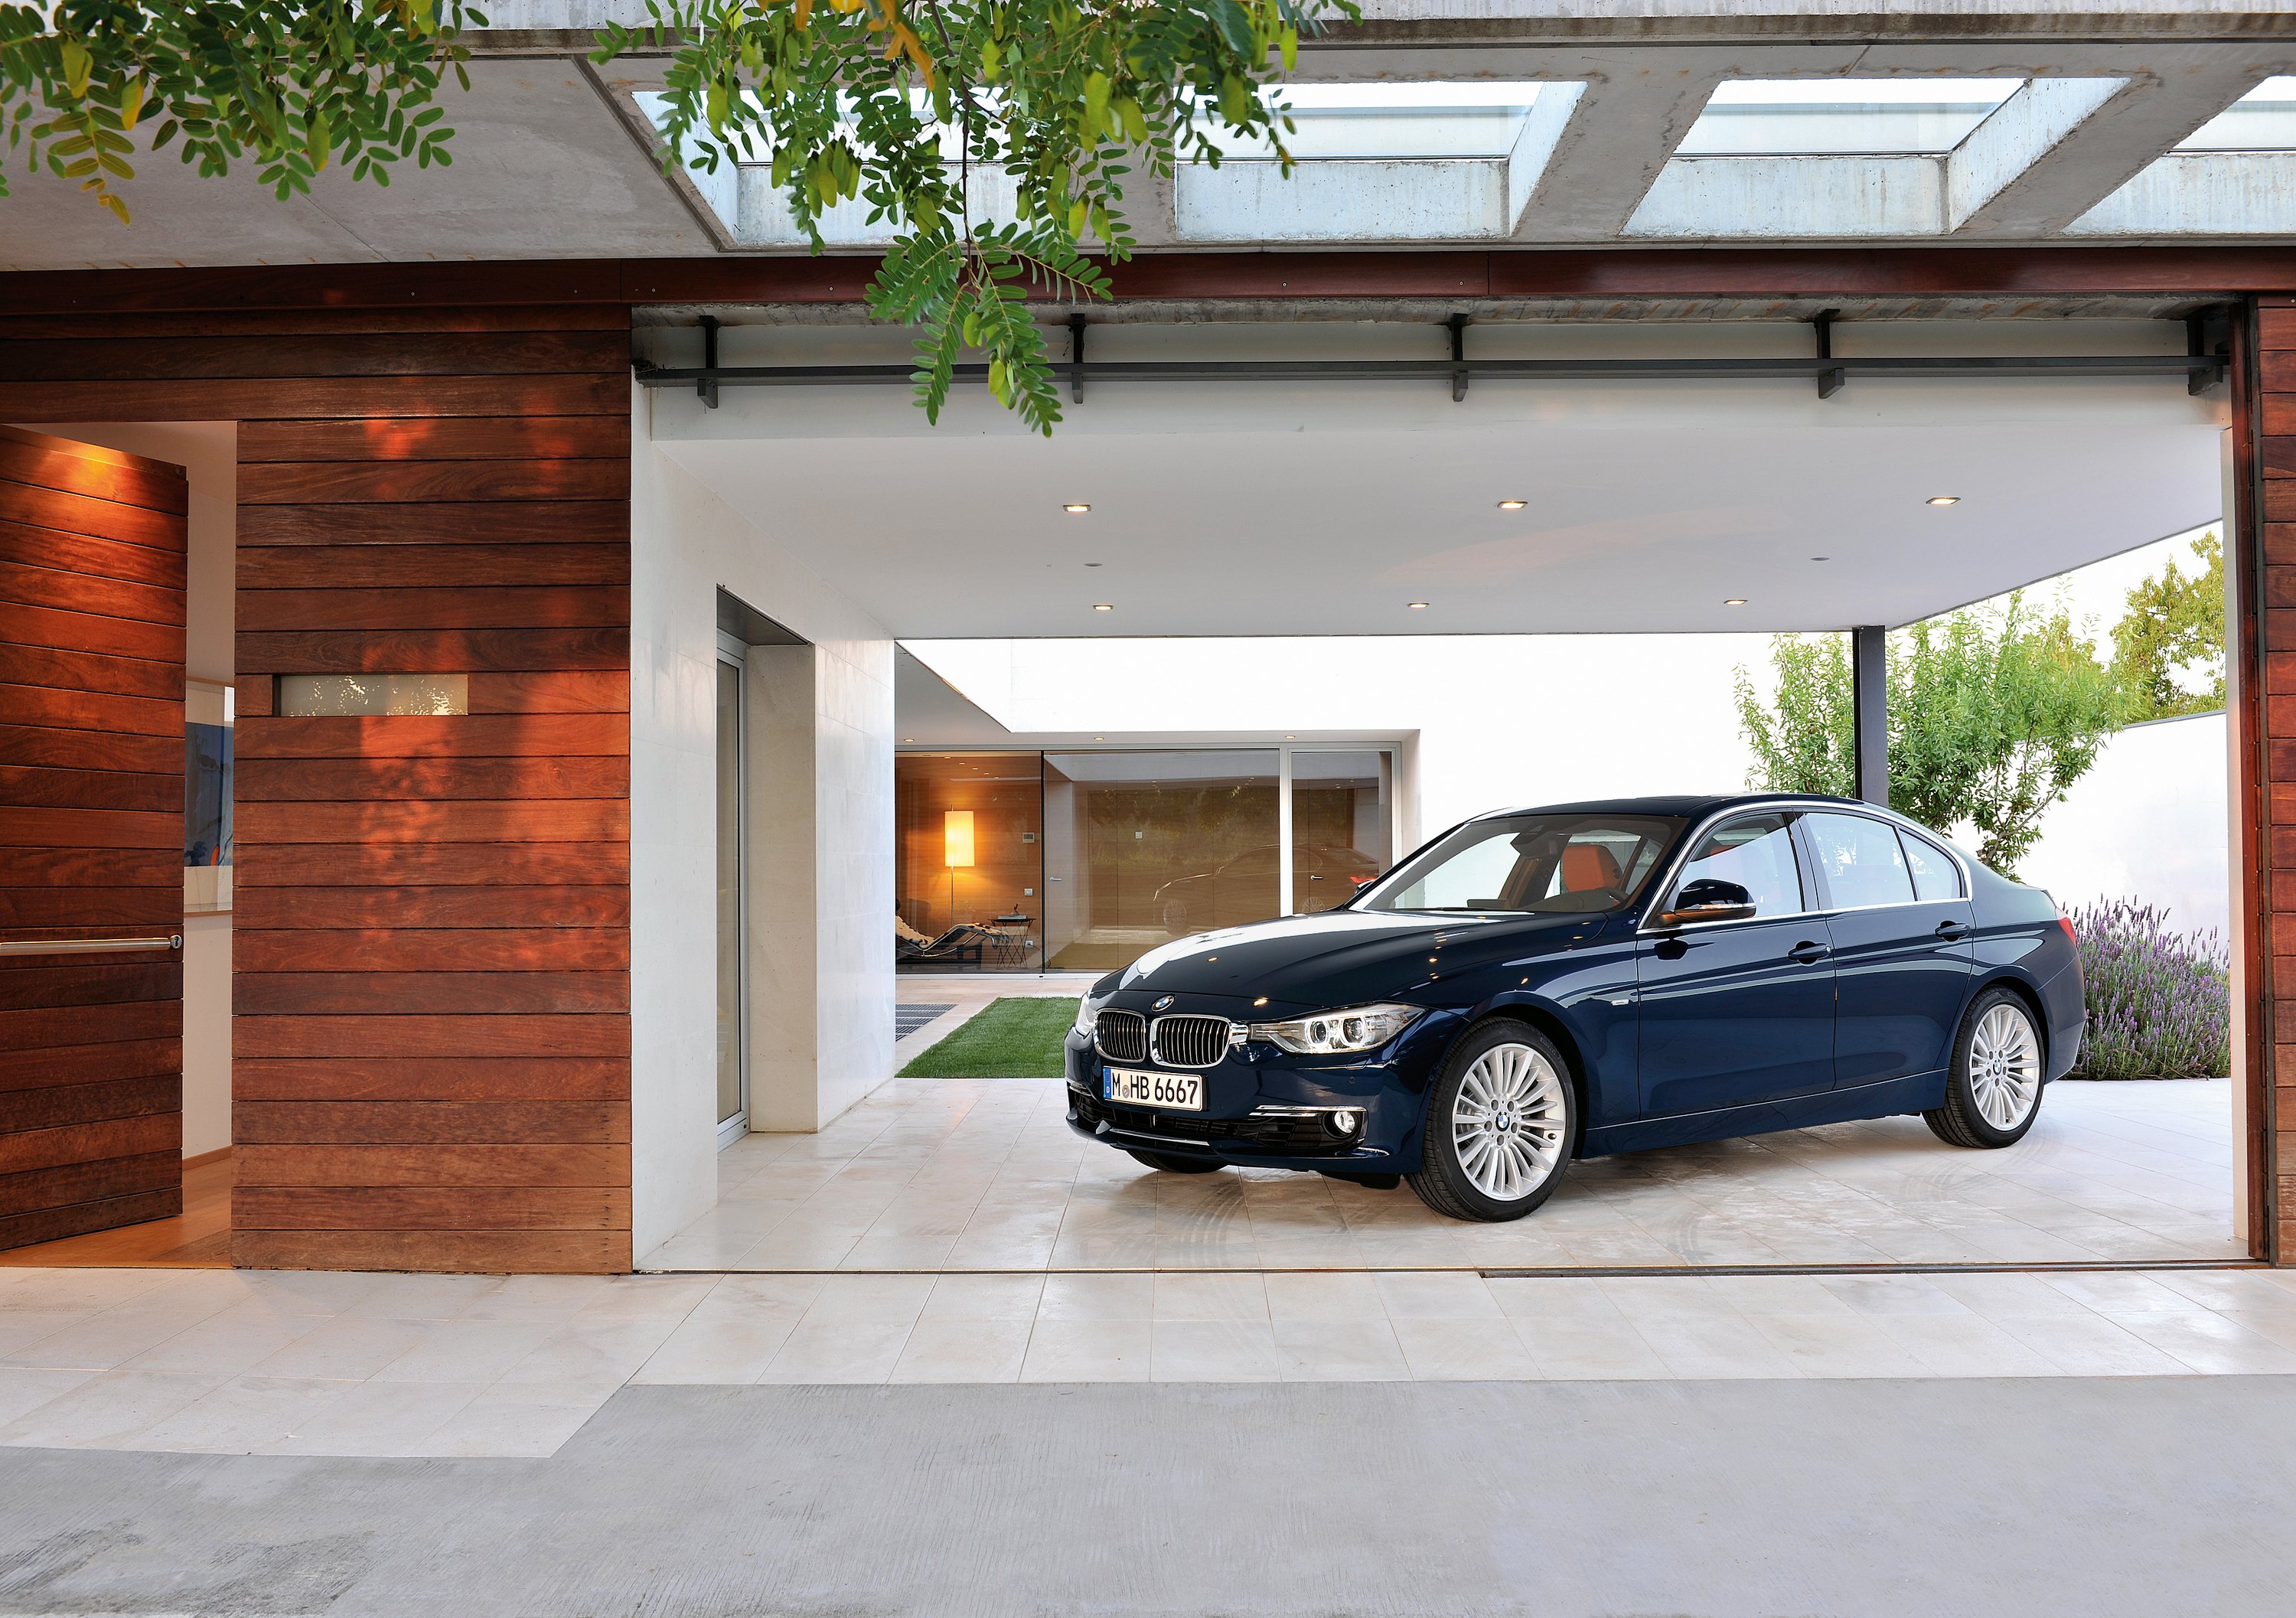 Nuova BMW Serie 3: i prezzi